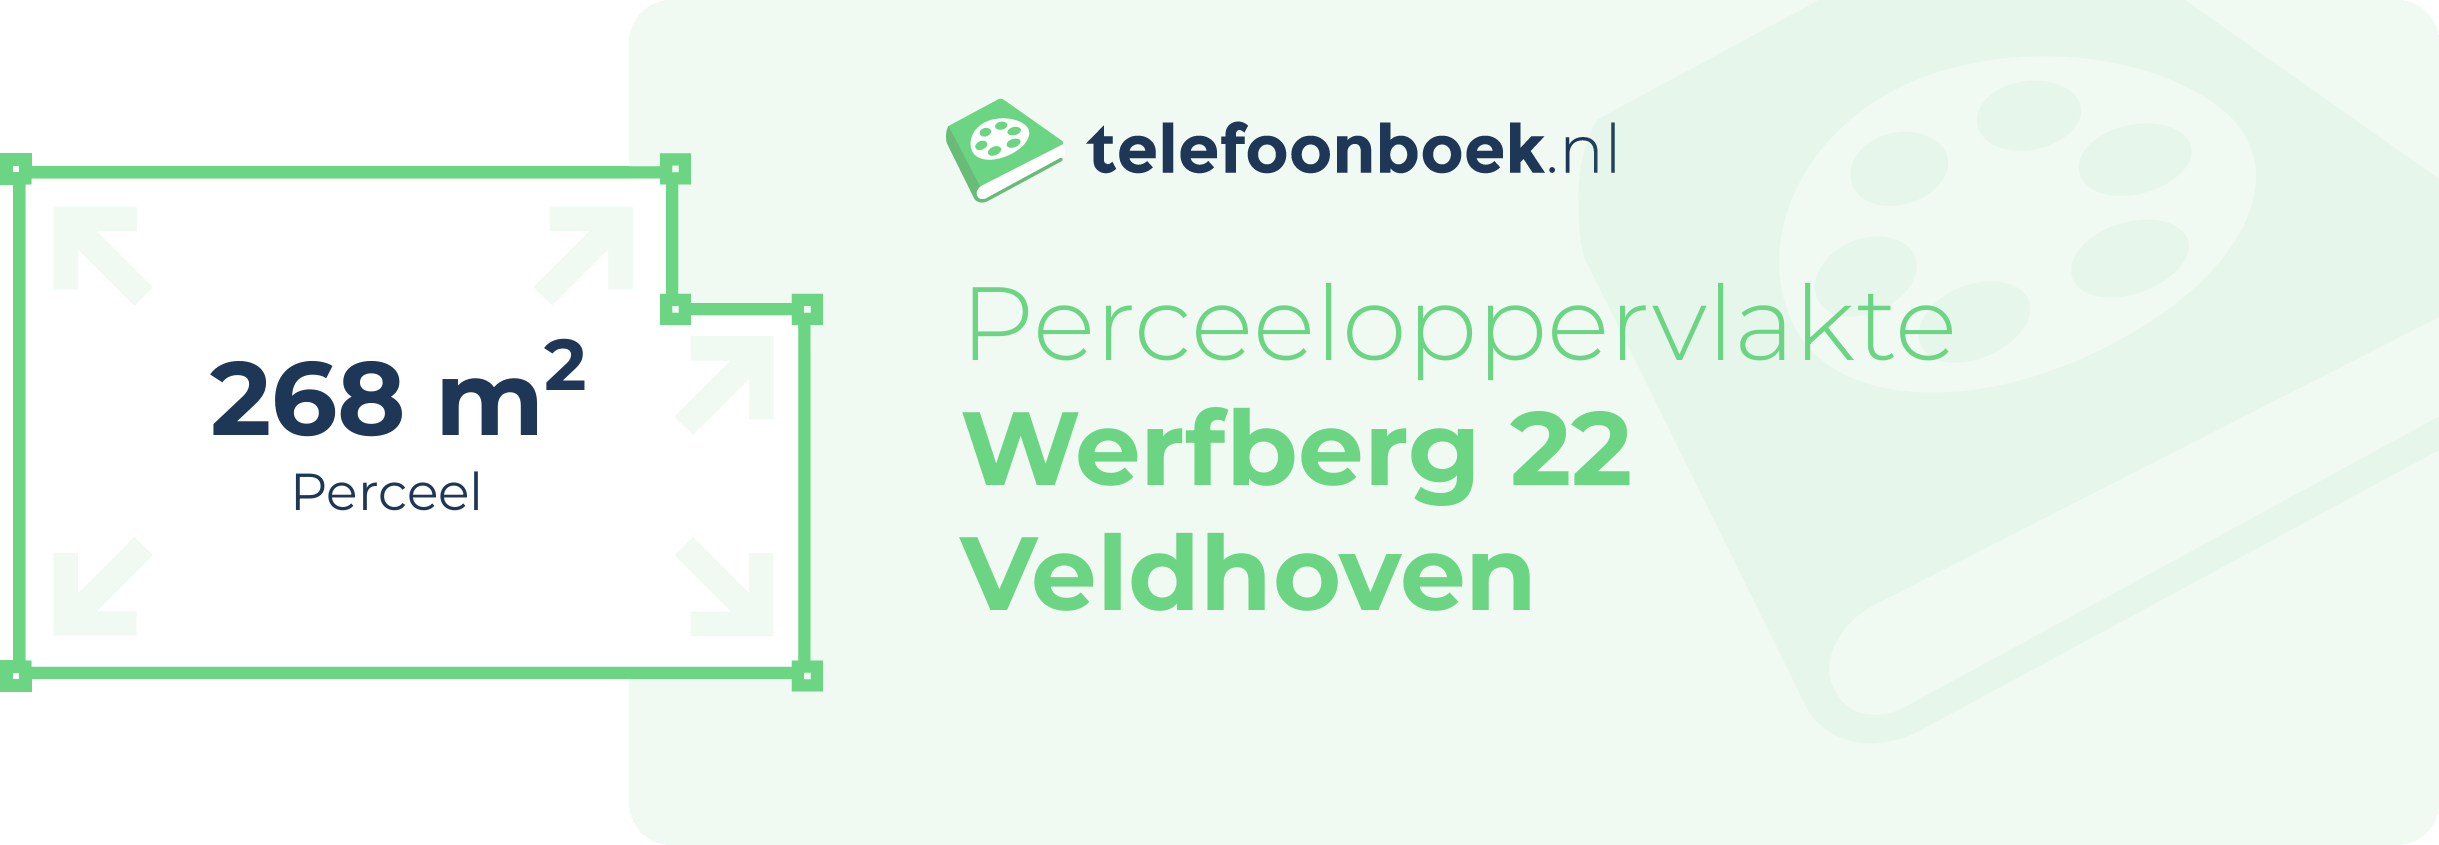 Perceeloppervlakte Werfberg 22 Veldhoven